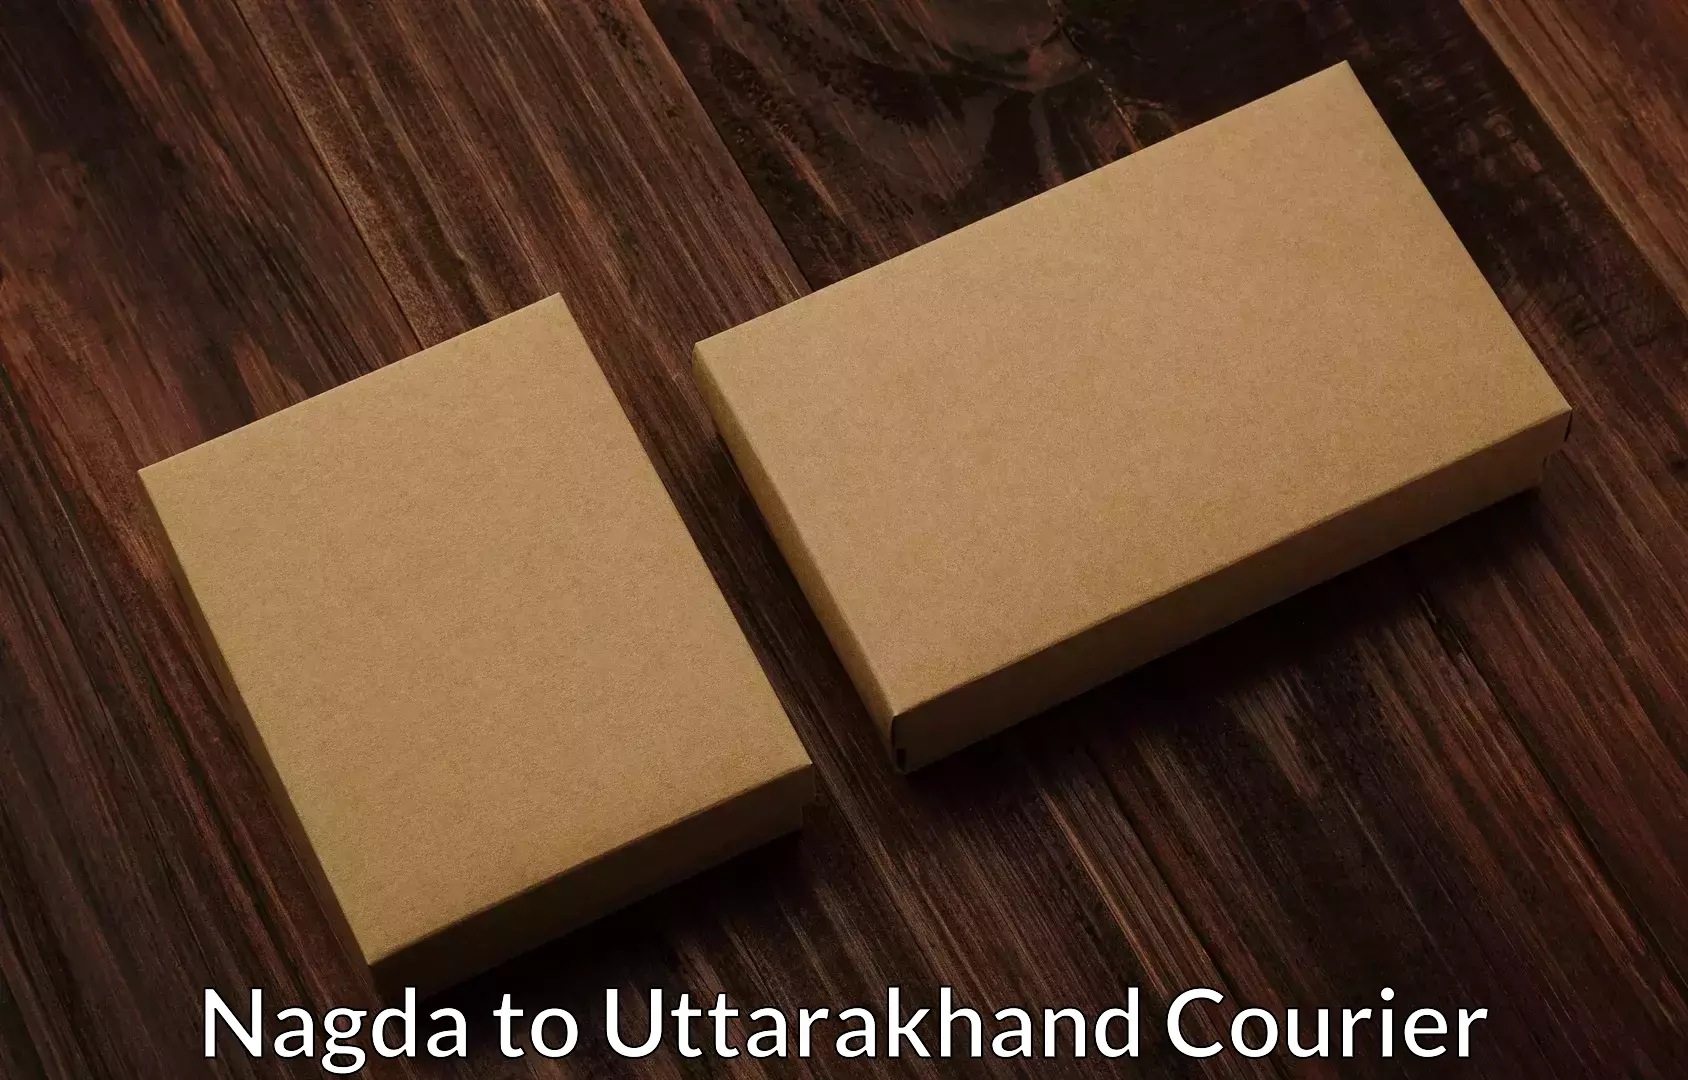 Household moving experts Nagda to Uttarakhand